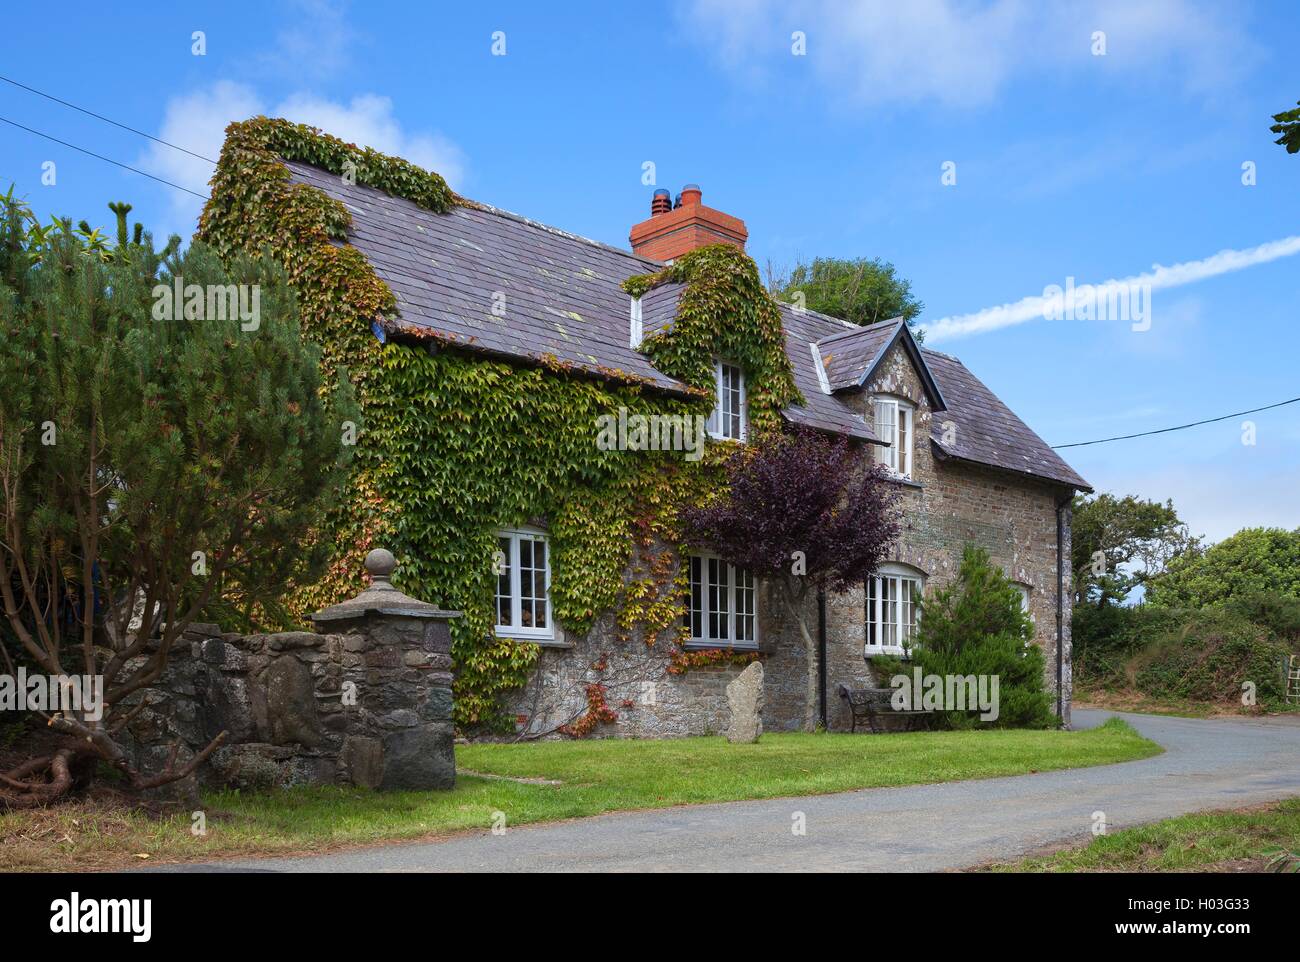 Welsh, maison en pierre, Pembrokeshire, Pays de Galles, Grande-Bretagne Banque D'Images